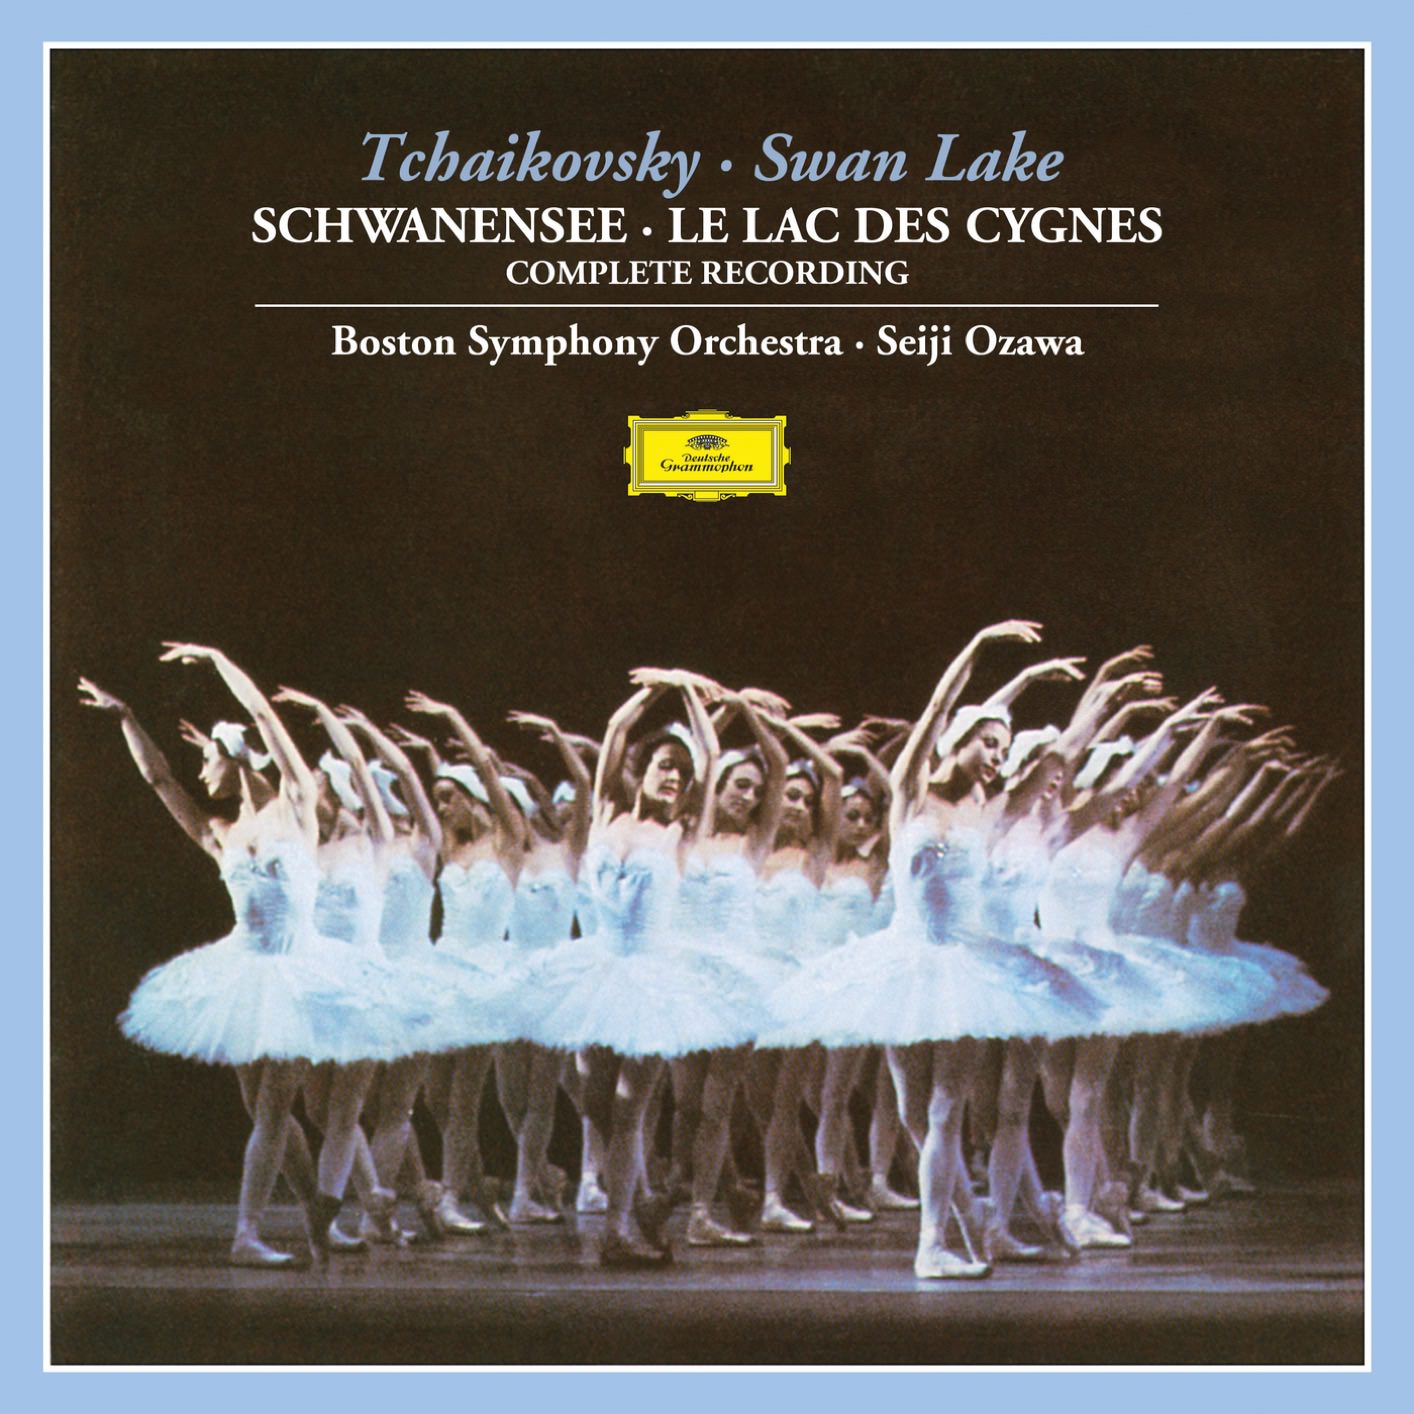 Boston Symphony Orchestra & Seiji Ozawa - Tchaikovsky: Swan Lake, Op.20, TH.12 (1979/2018) [FLAC 24bit/96kHz]